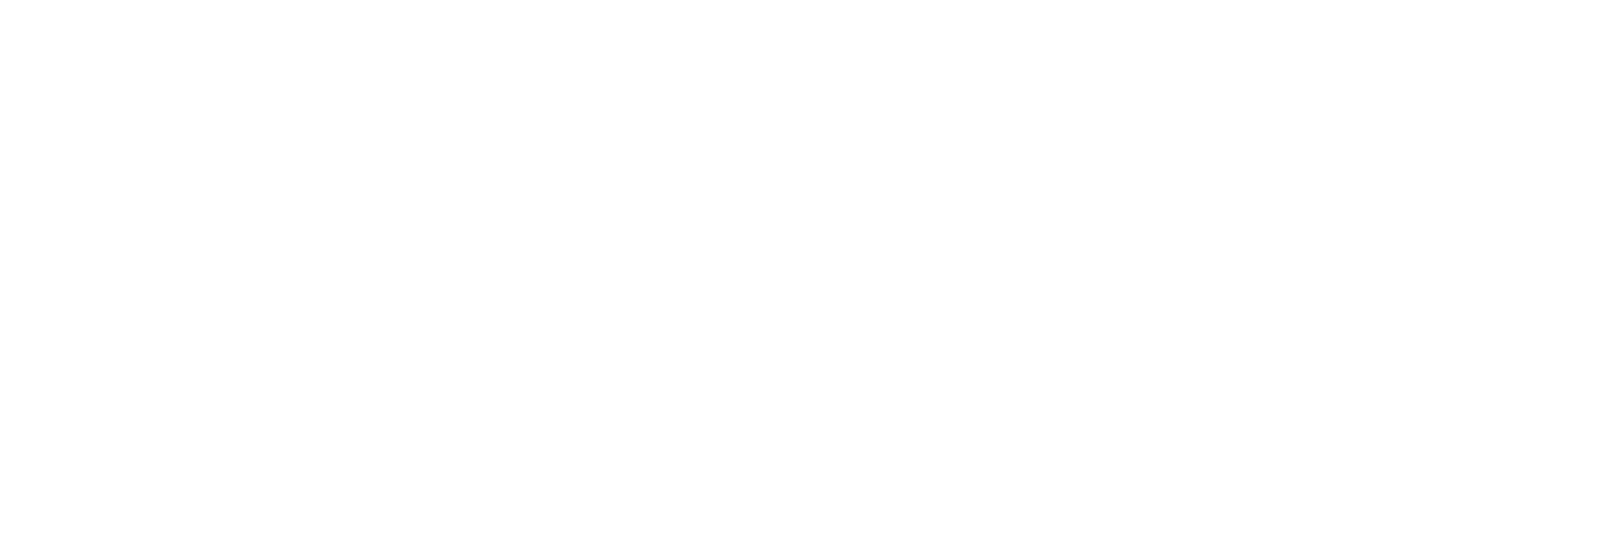 SeniorFocus logo